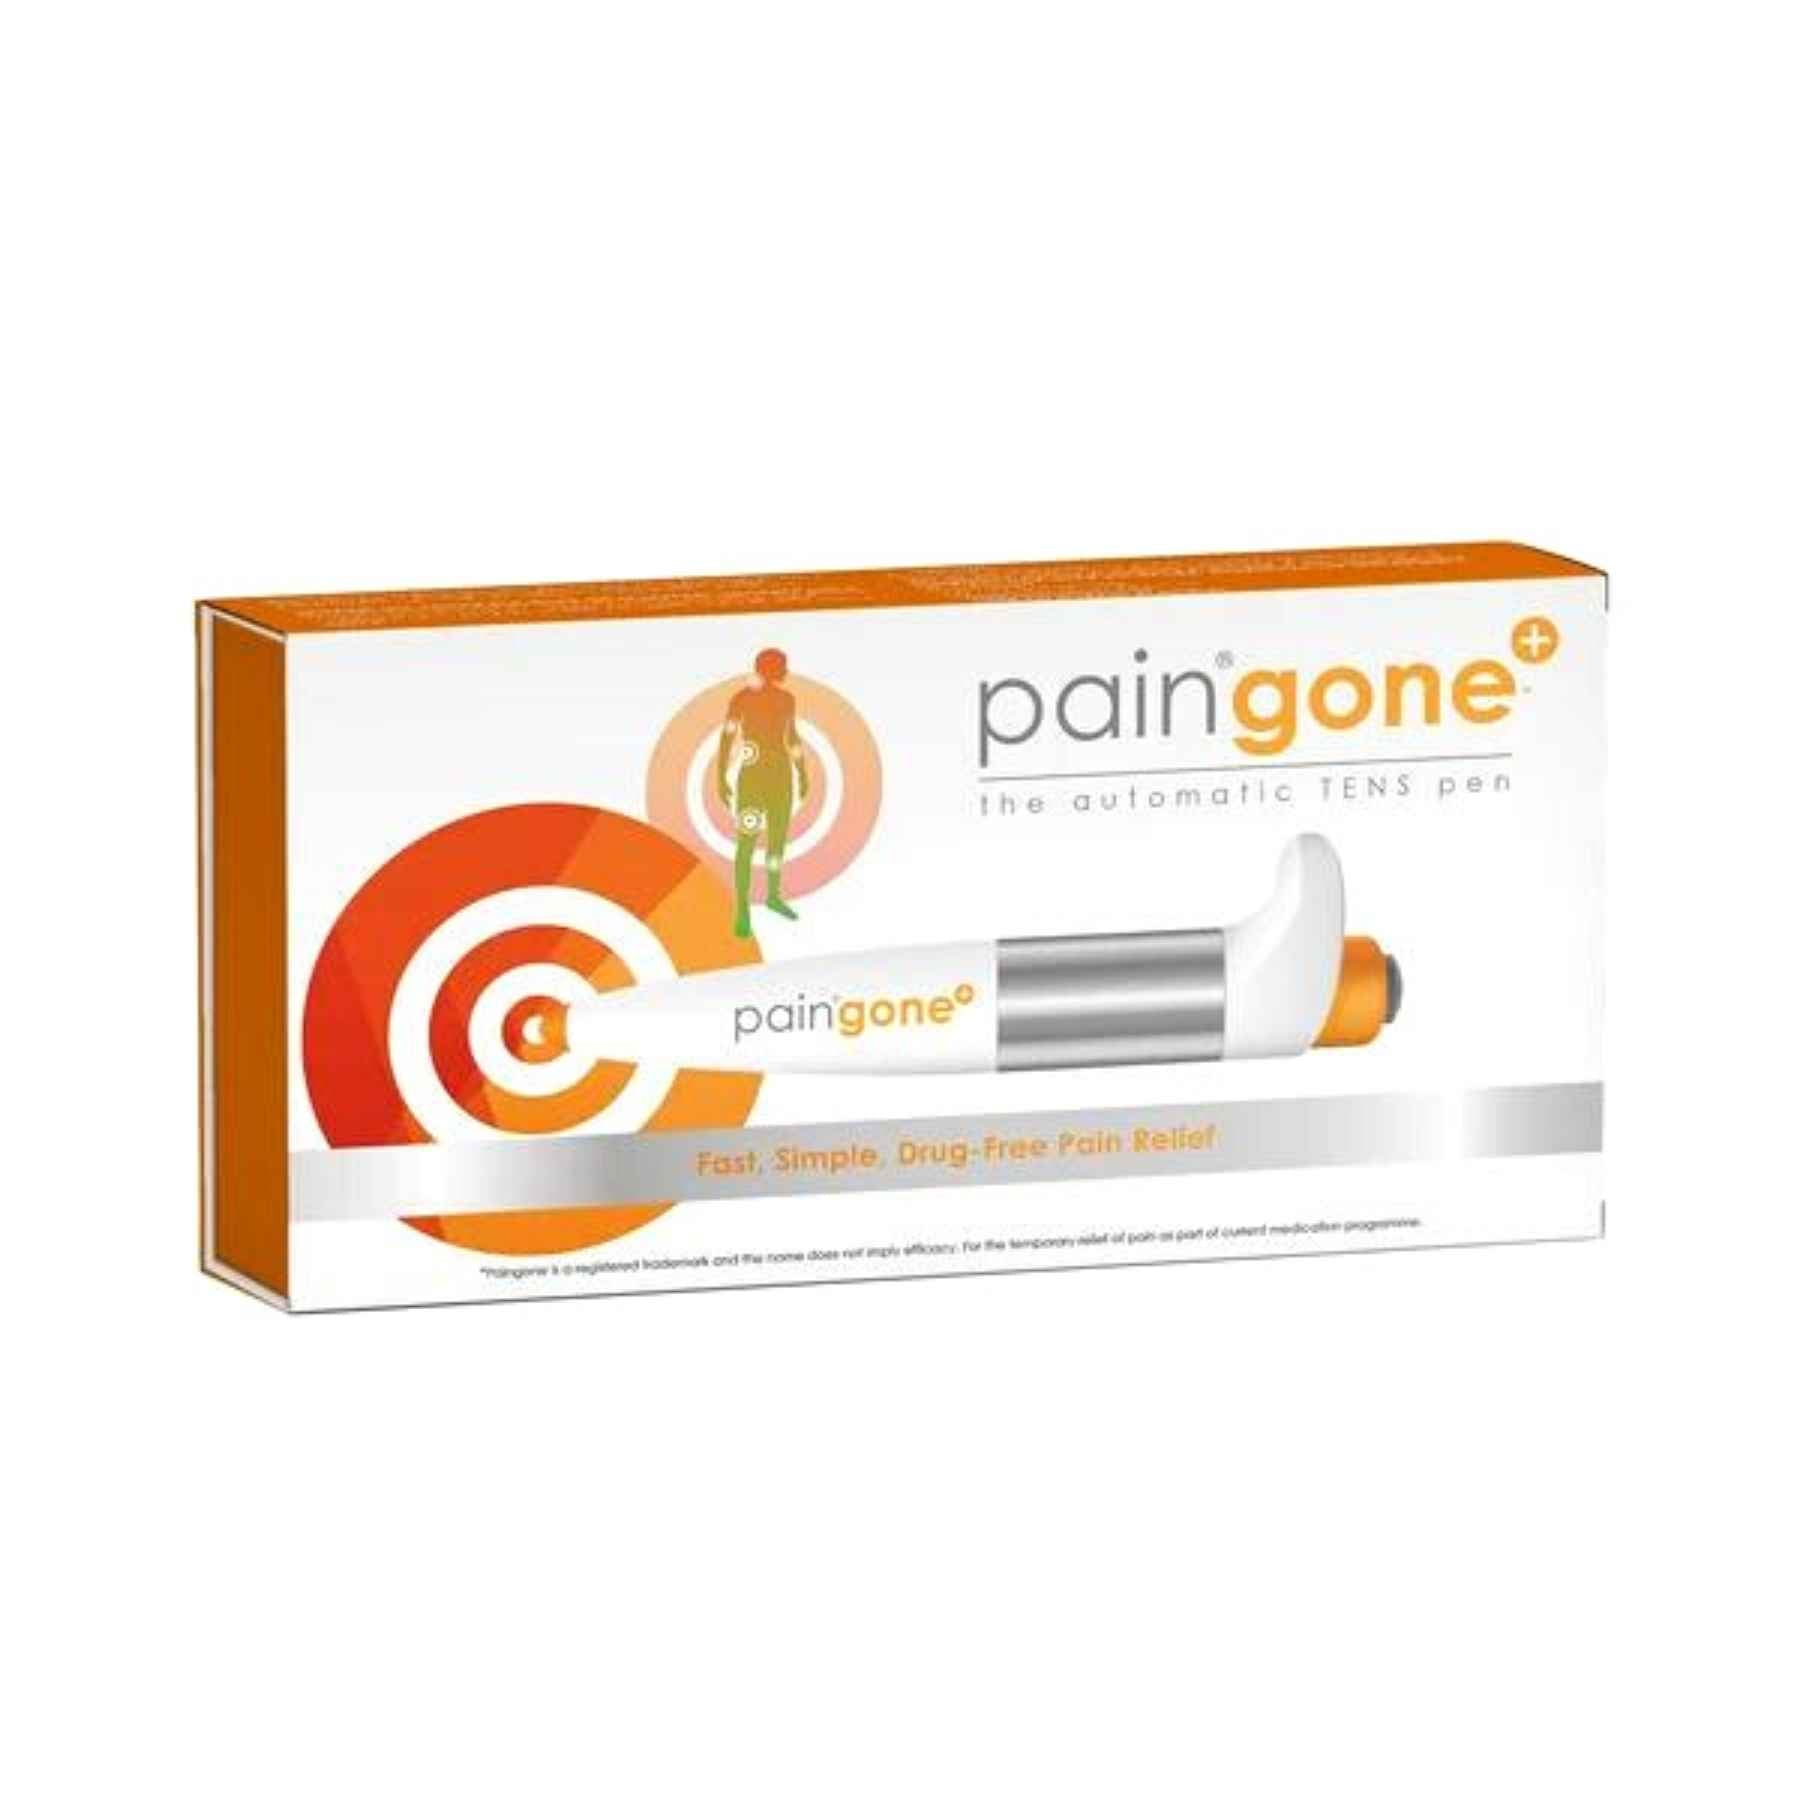 Buy Paingone Plus Automatic TENS Pen Online